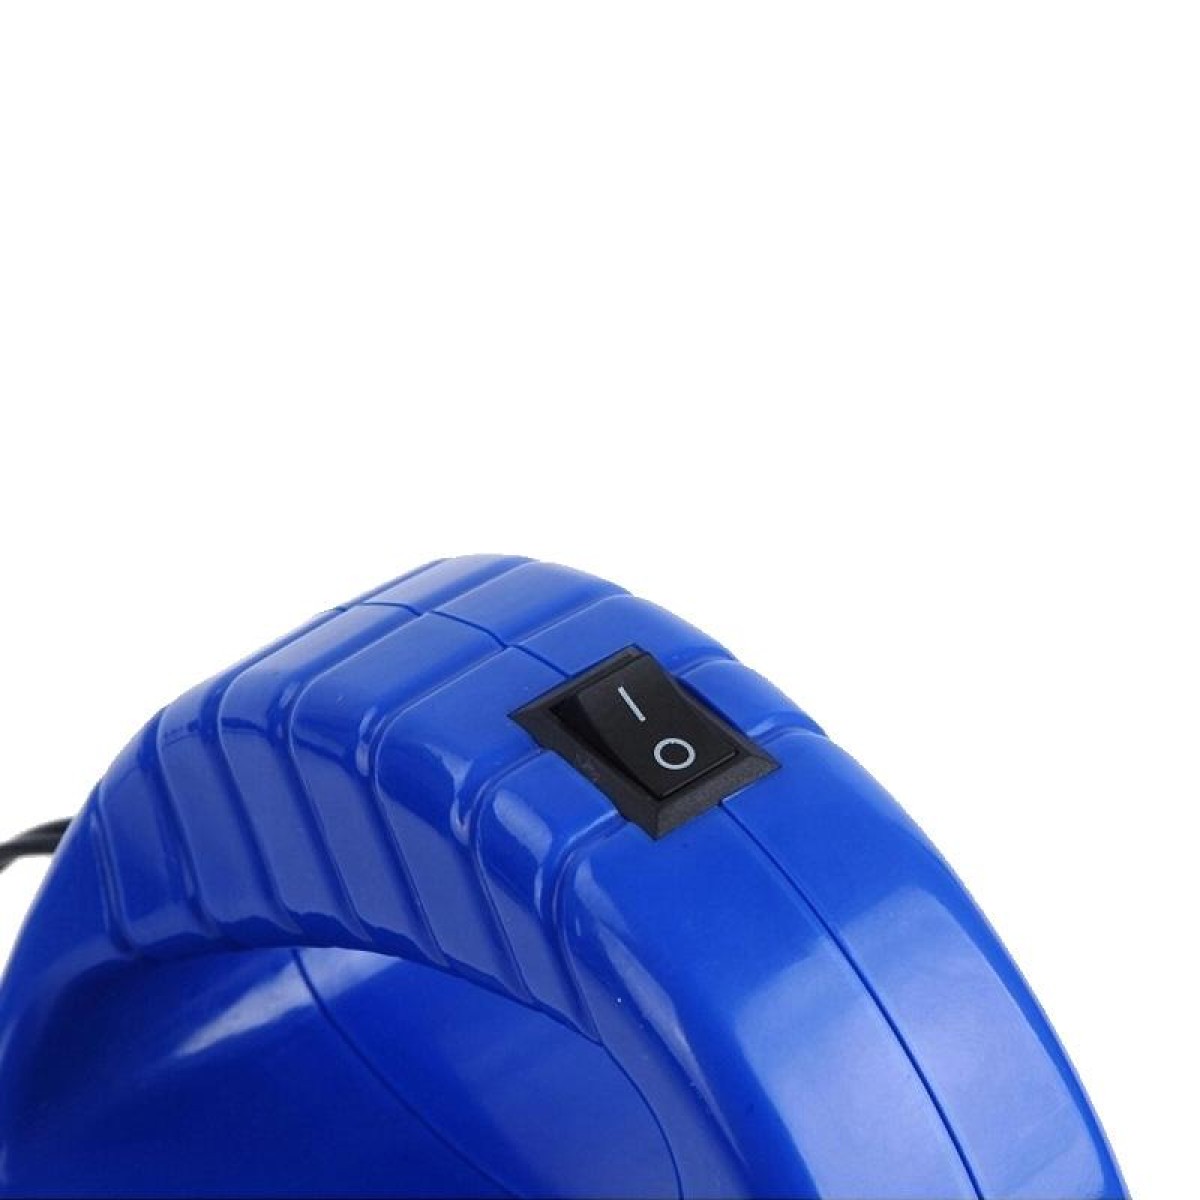 12V 40W Care Tools Car Wax Polishing Machine(Blue)